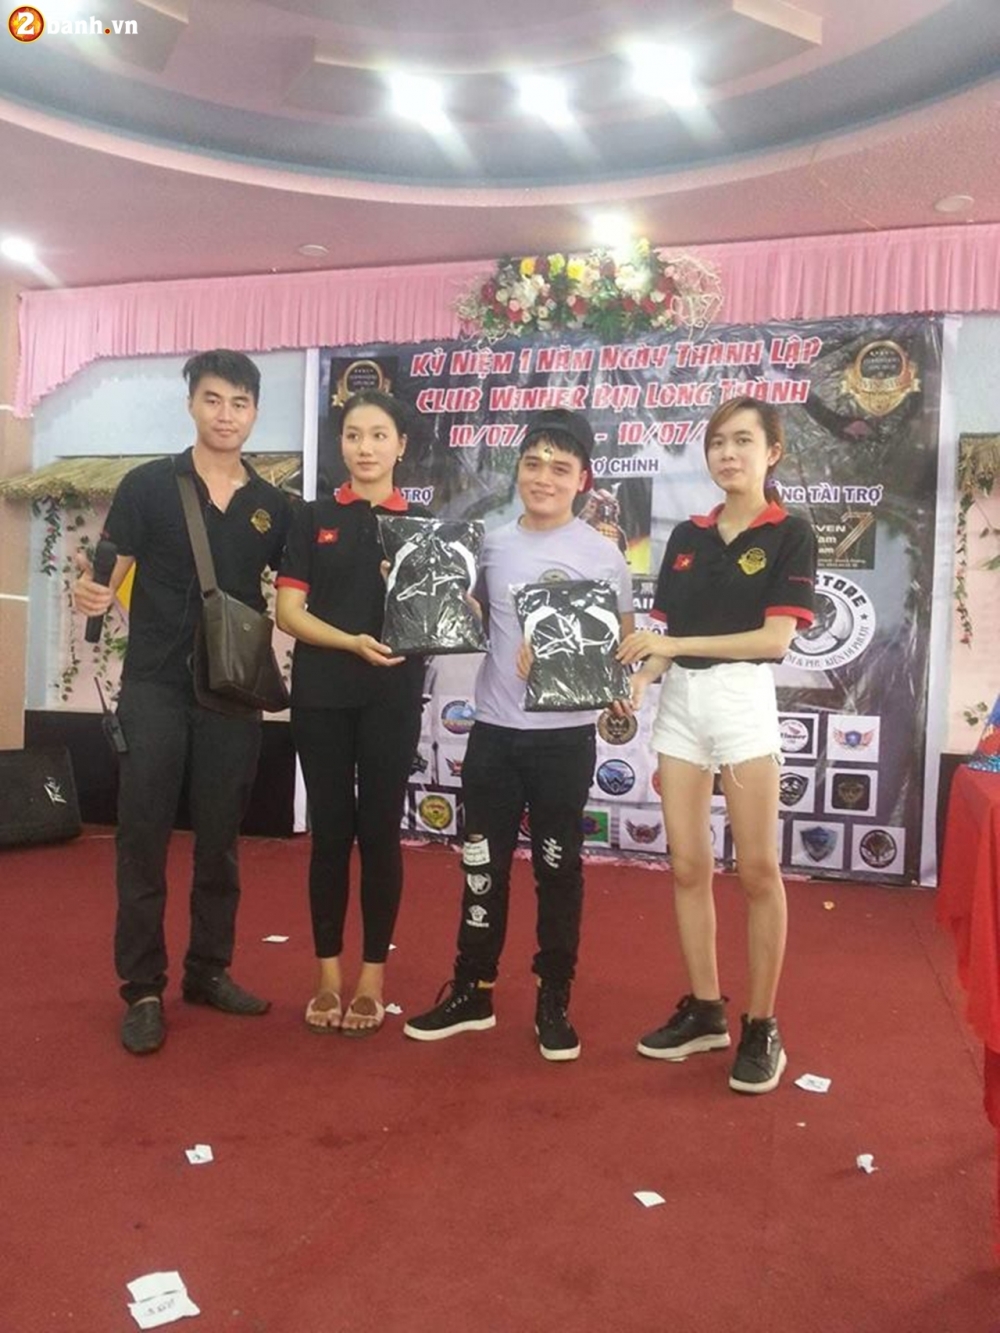 Club Winner Bui Long Thanh on lai ki niem sau 1 nam thanh lap - 11